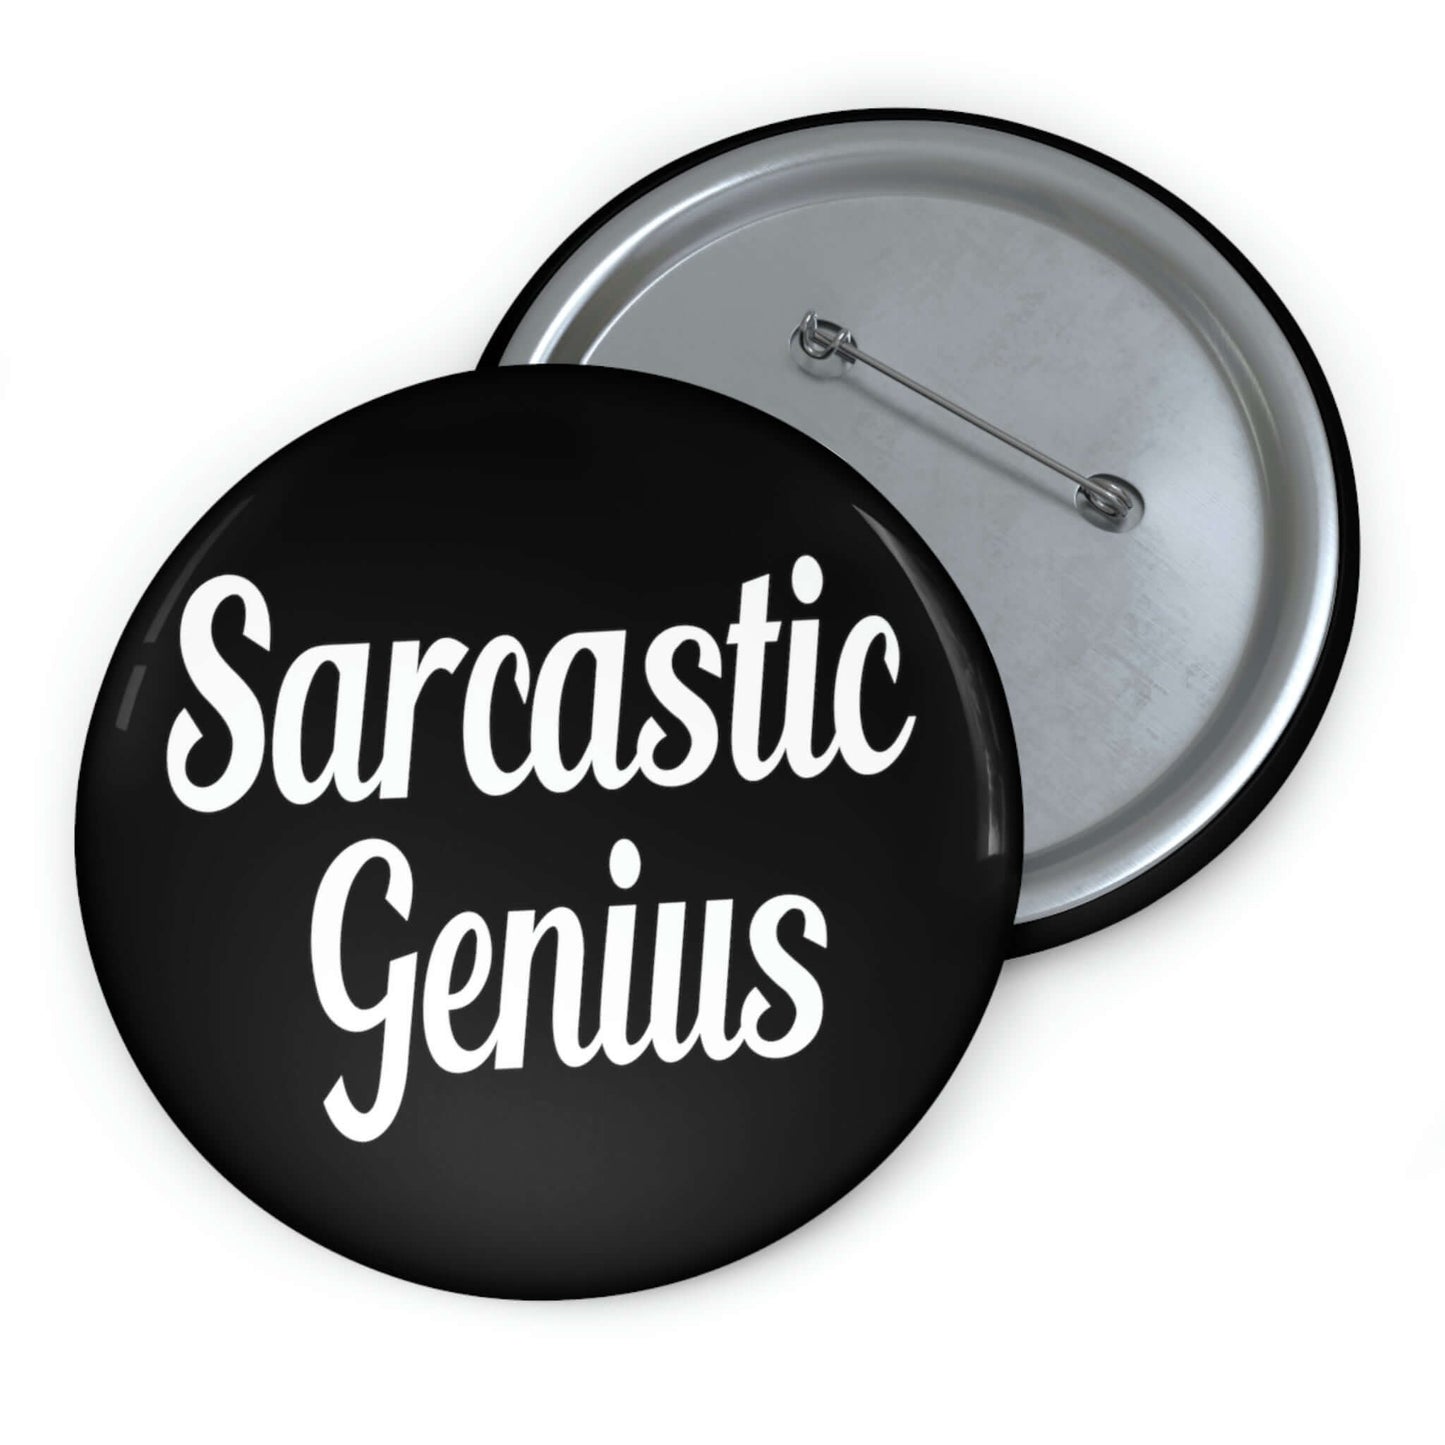 Sarcastic genius pinback button